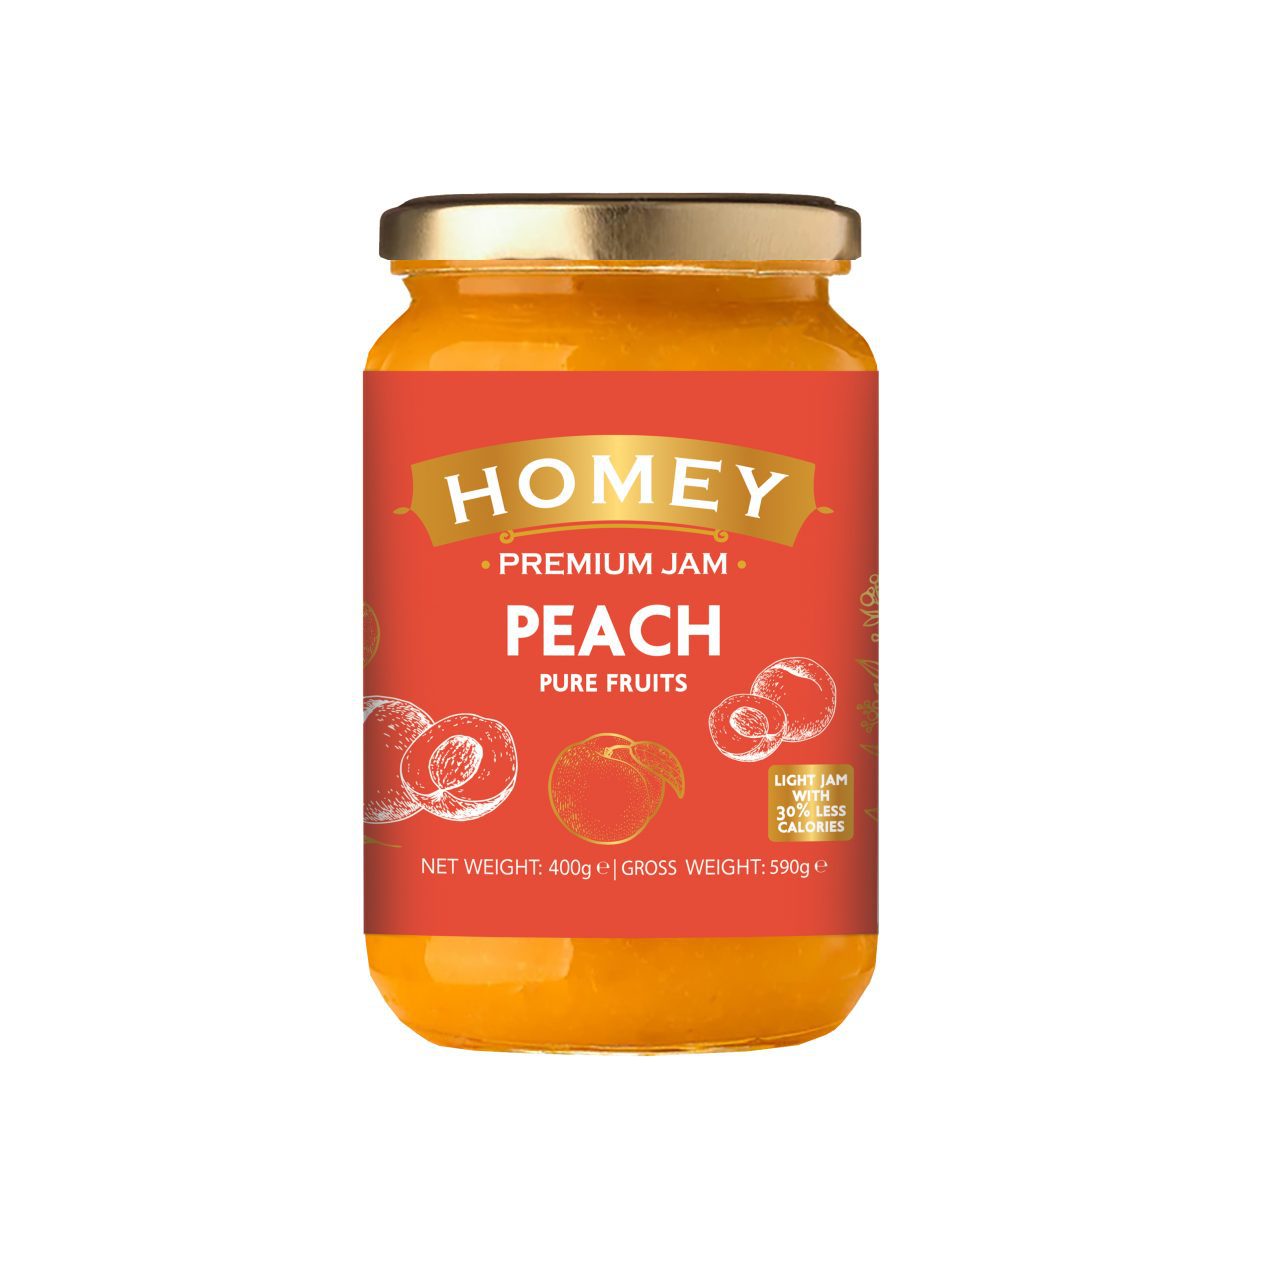 HOMEY Marmelade Peach - Amhes Pharma - Παραγωγη προϊόντων ιδιωτικης ετικετας